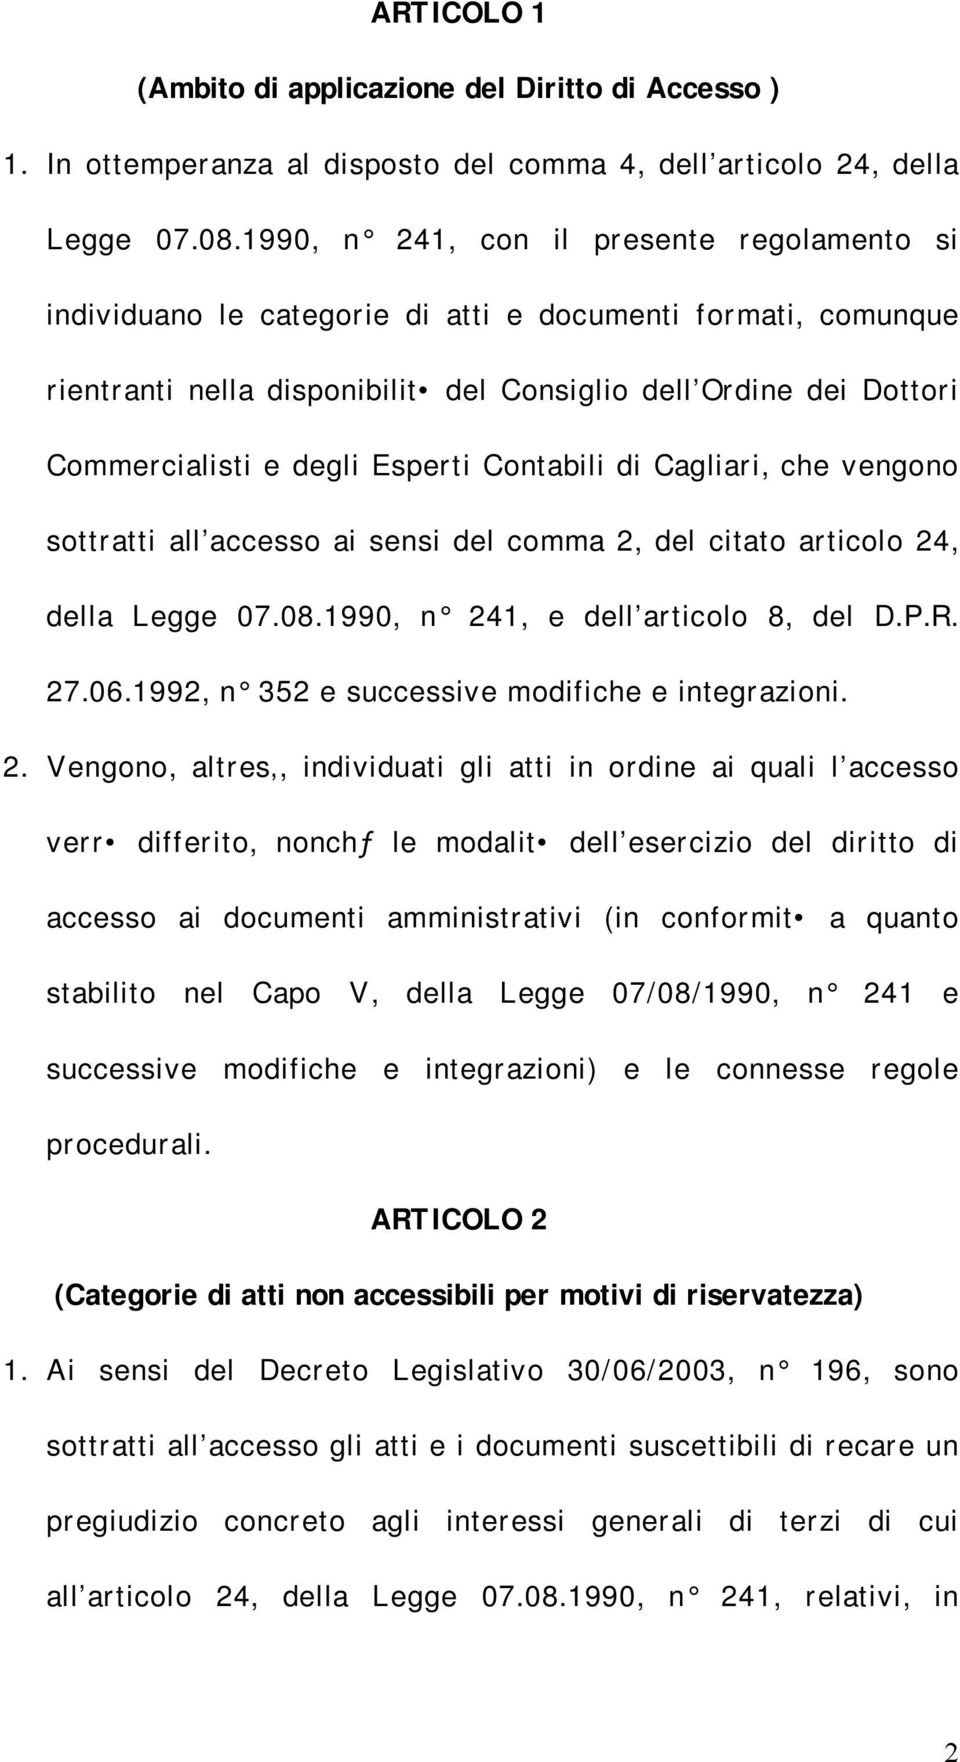 Esperti Contabili di Cagliari, che vengono sottratti all accesso ai sensi del comma 2, del citato articolo 24, della Legge 07.08.1990, n 241, e dell articolo 8, del D.P.R. 27.06.